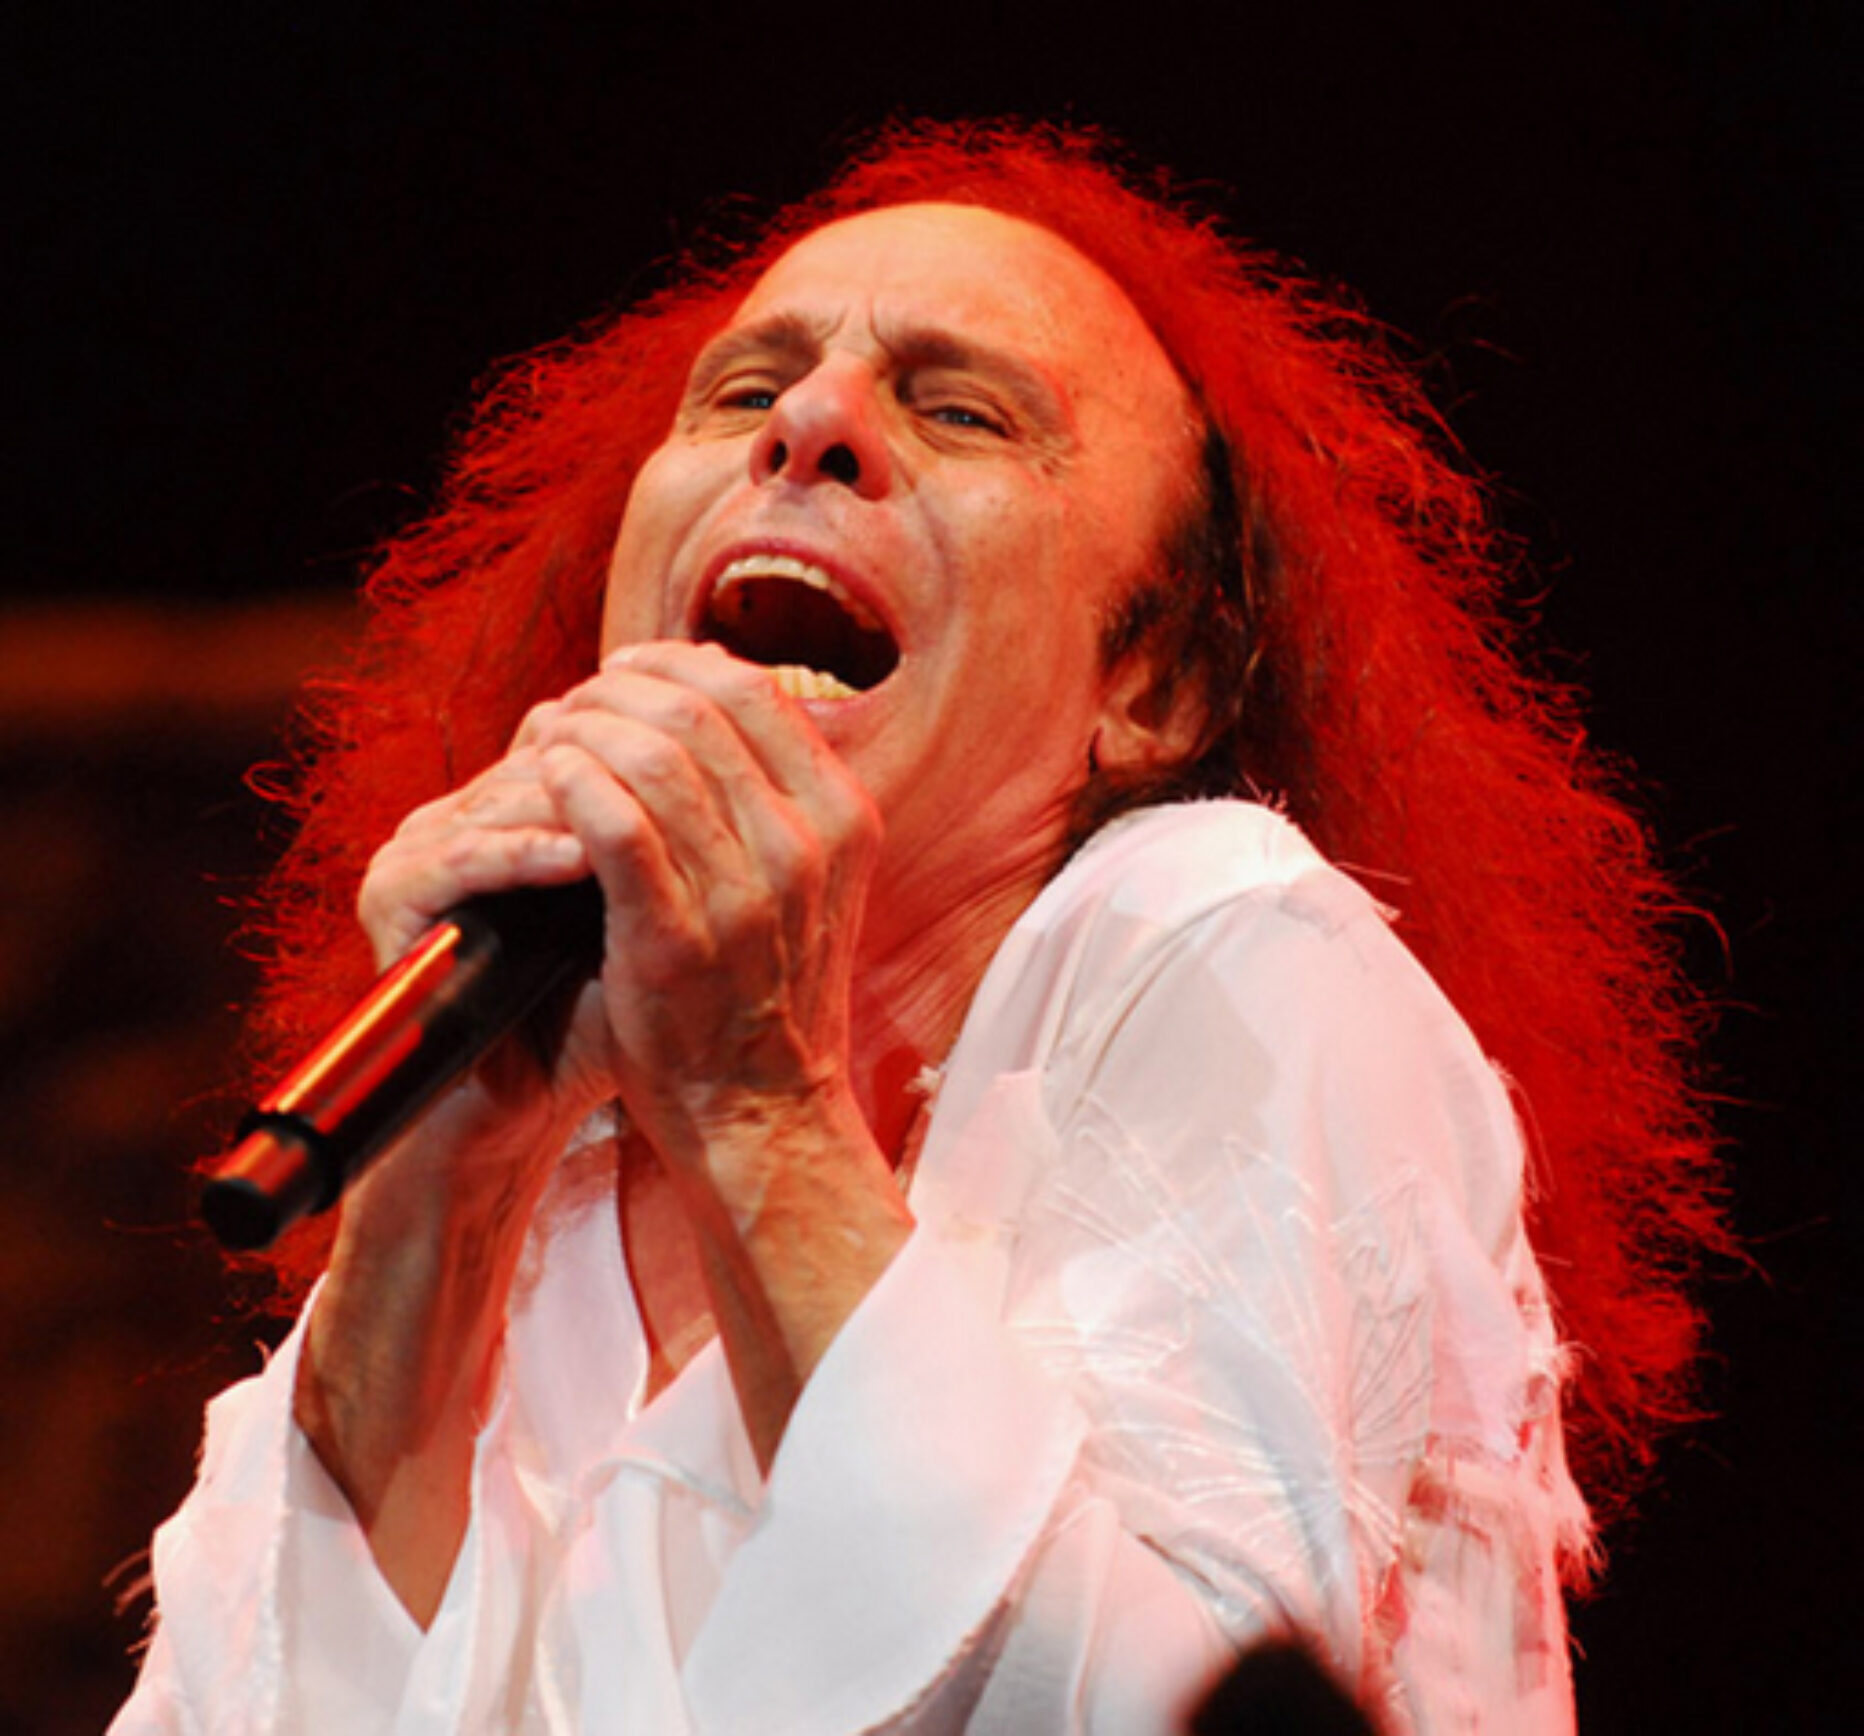 Ronnie James Dio – 10/07/1942 – 16/05/2010